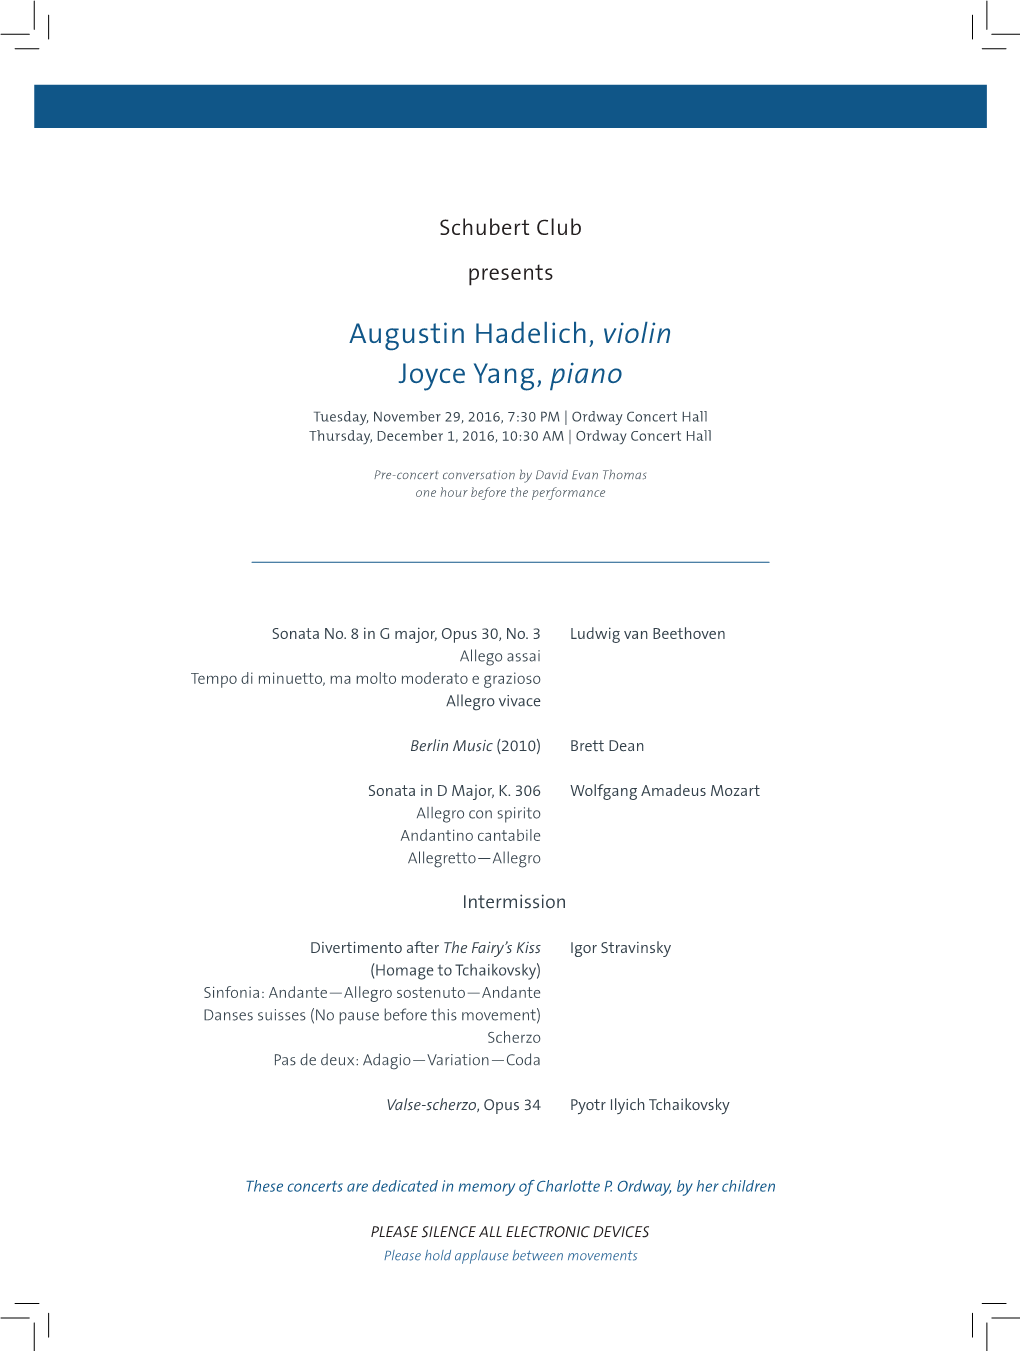 Augustin Hadelich, Violin Joyce Yang, Piano